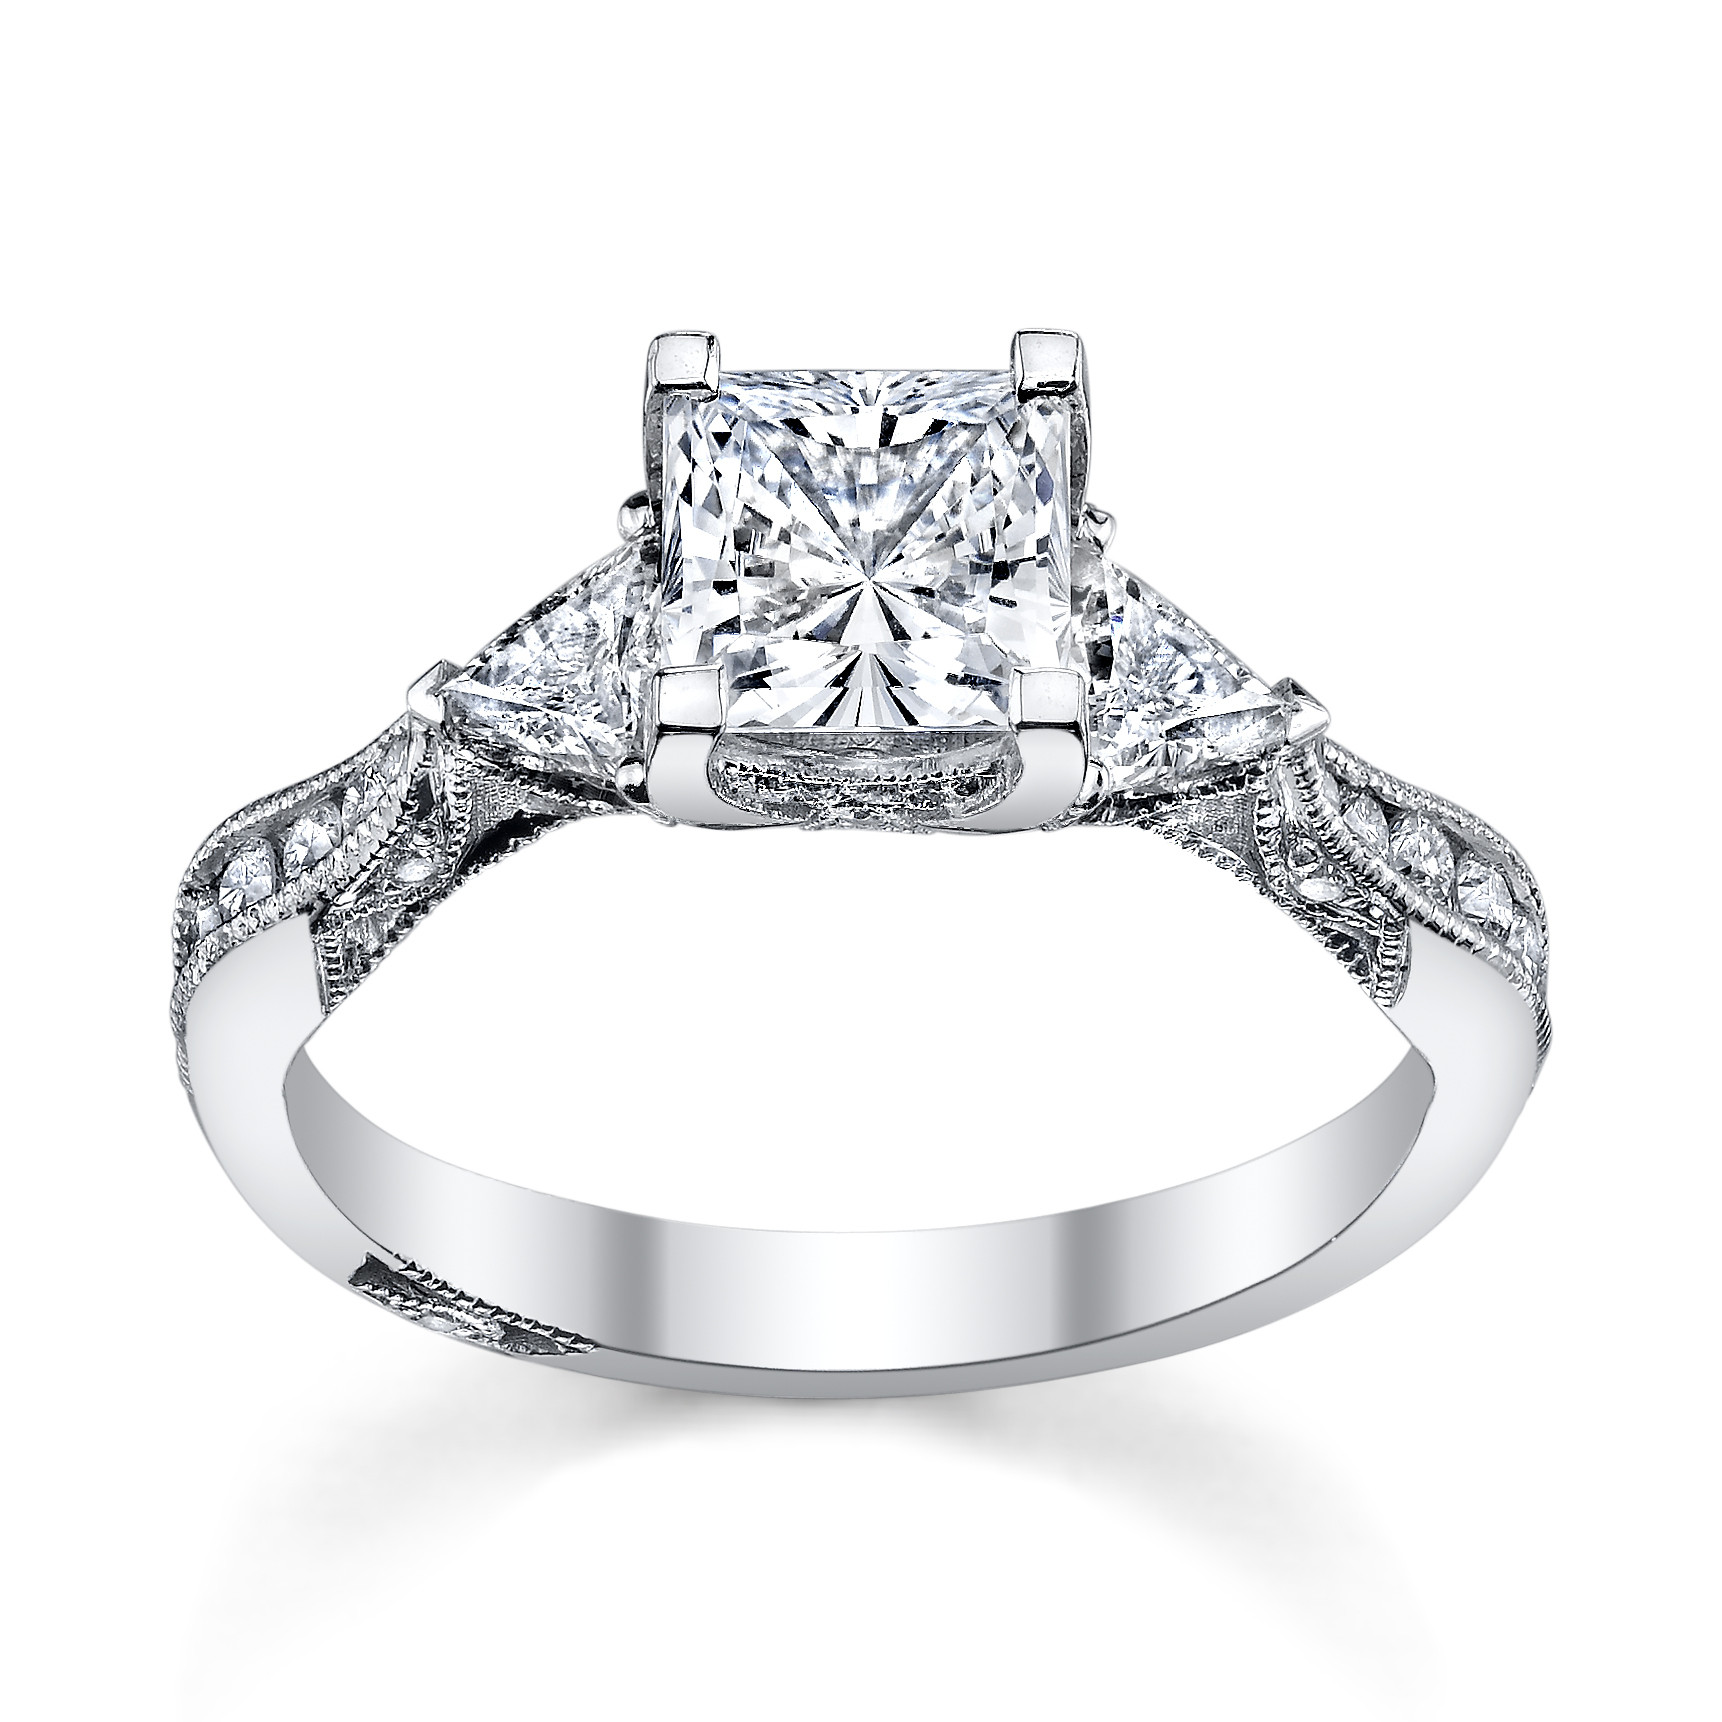 Princess Cut Wedding Ring
 6 Princess Cut Engagement Rings She ll Love Robbins